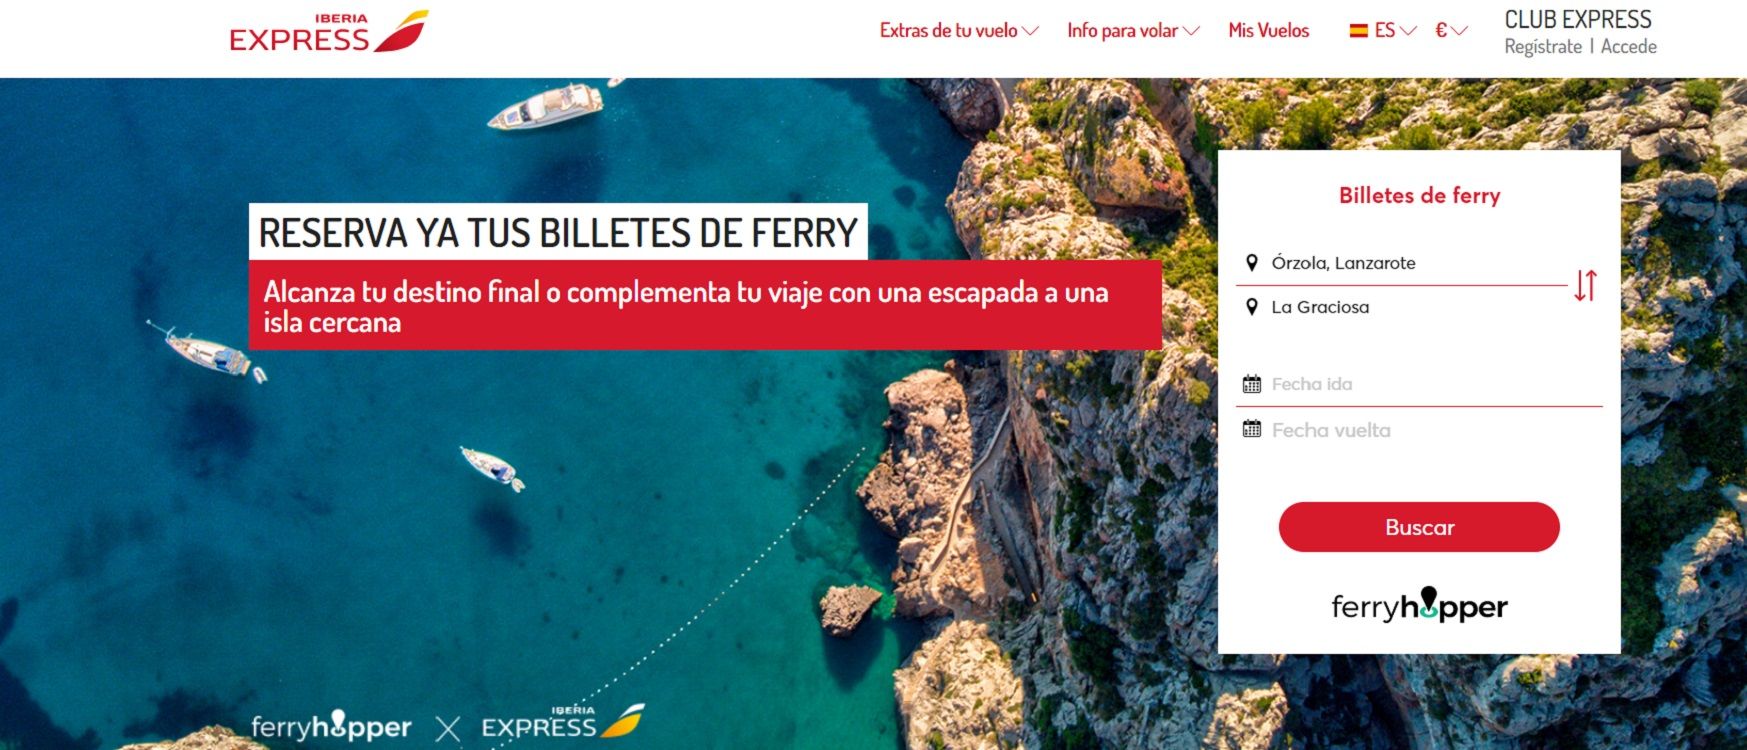 Página web de Iberia Express donde ya se puede reservar ferri y vuelo a la vez